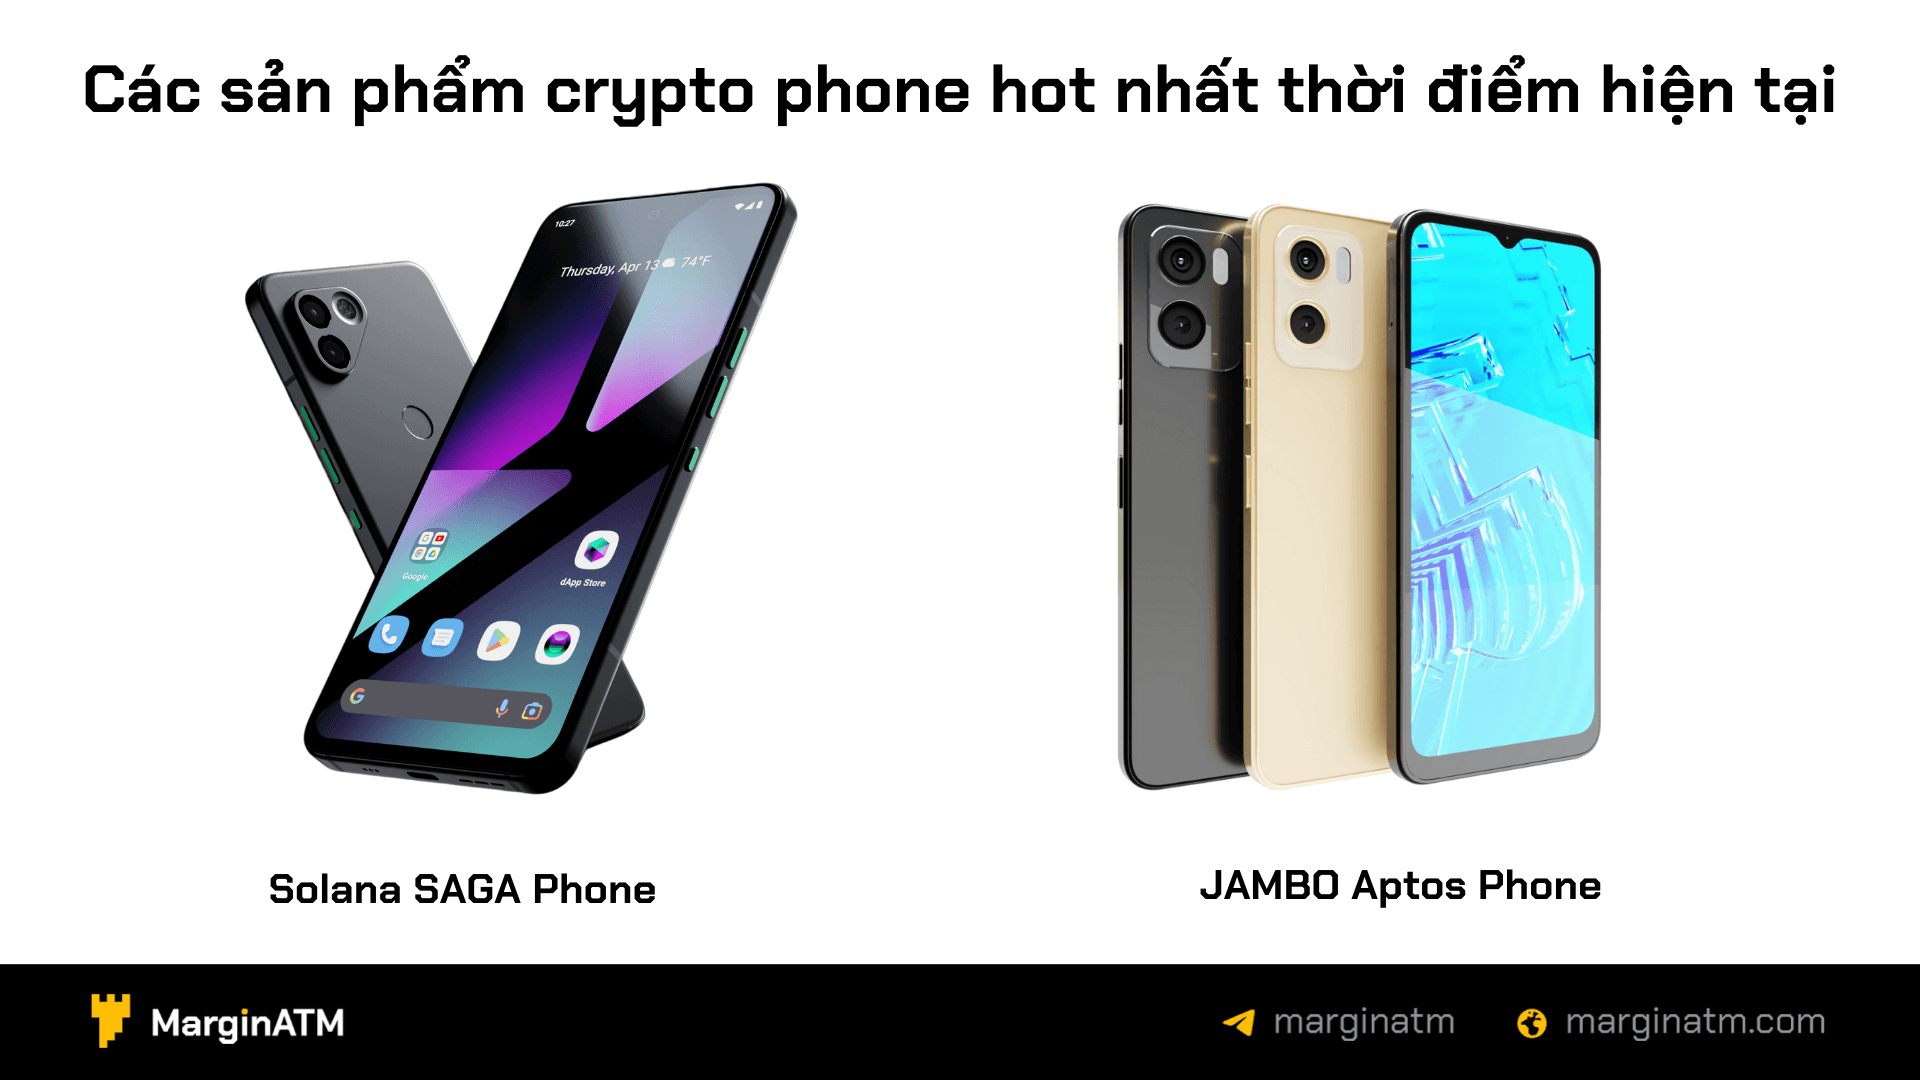 2 sản phẩm crypto phone được mong chờ nhất thị trường